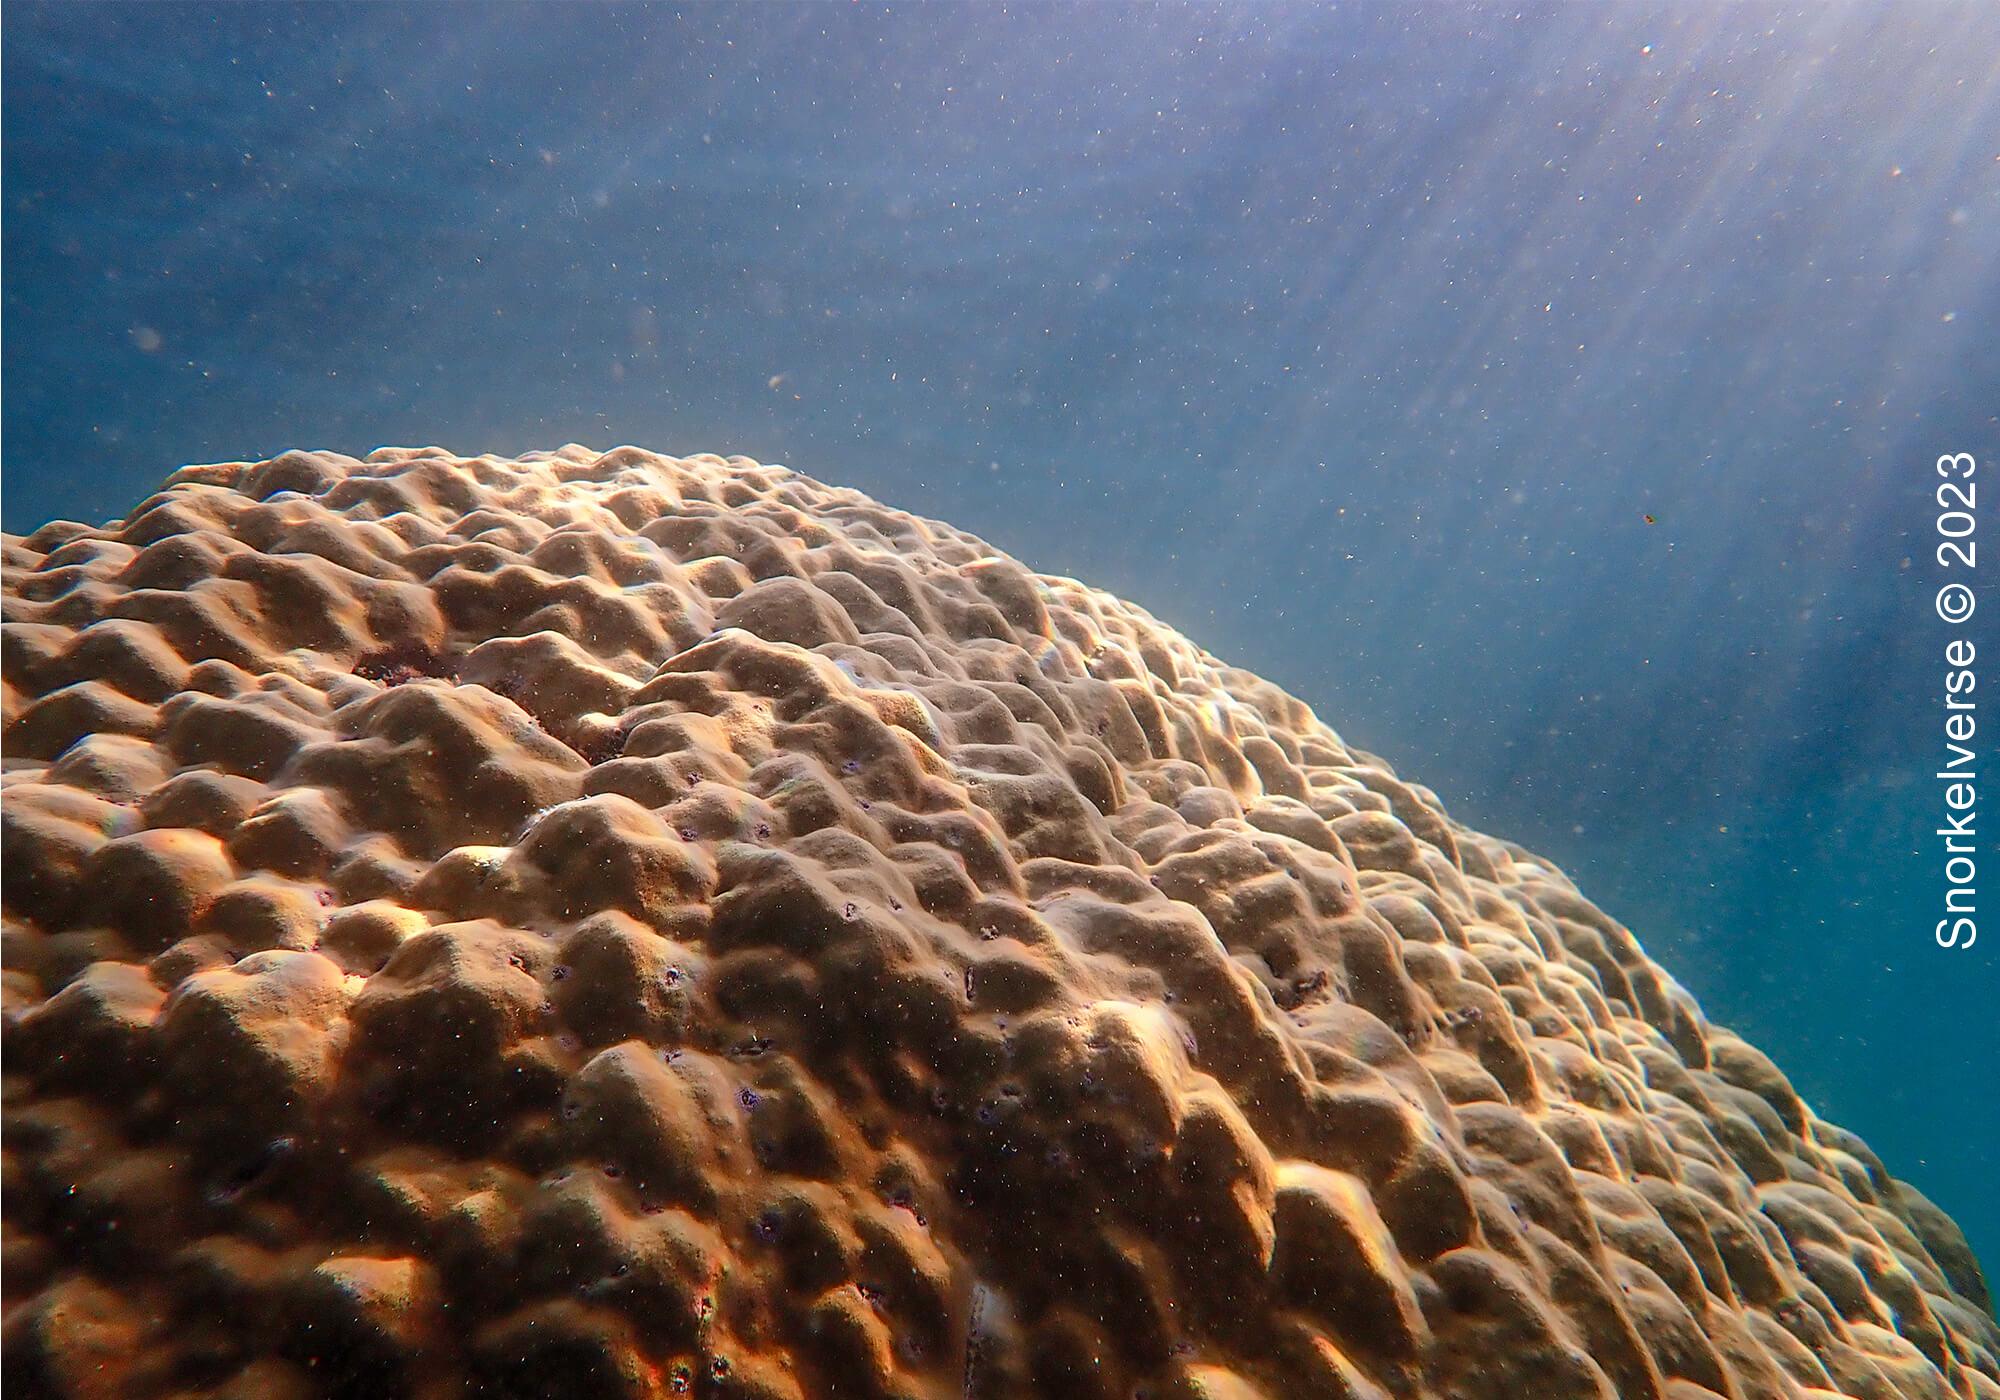 Massive Boulder Coral